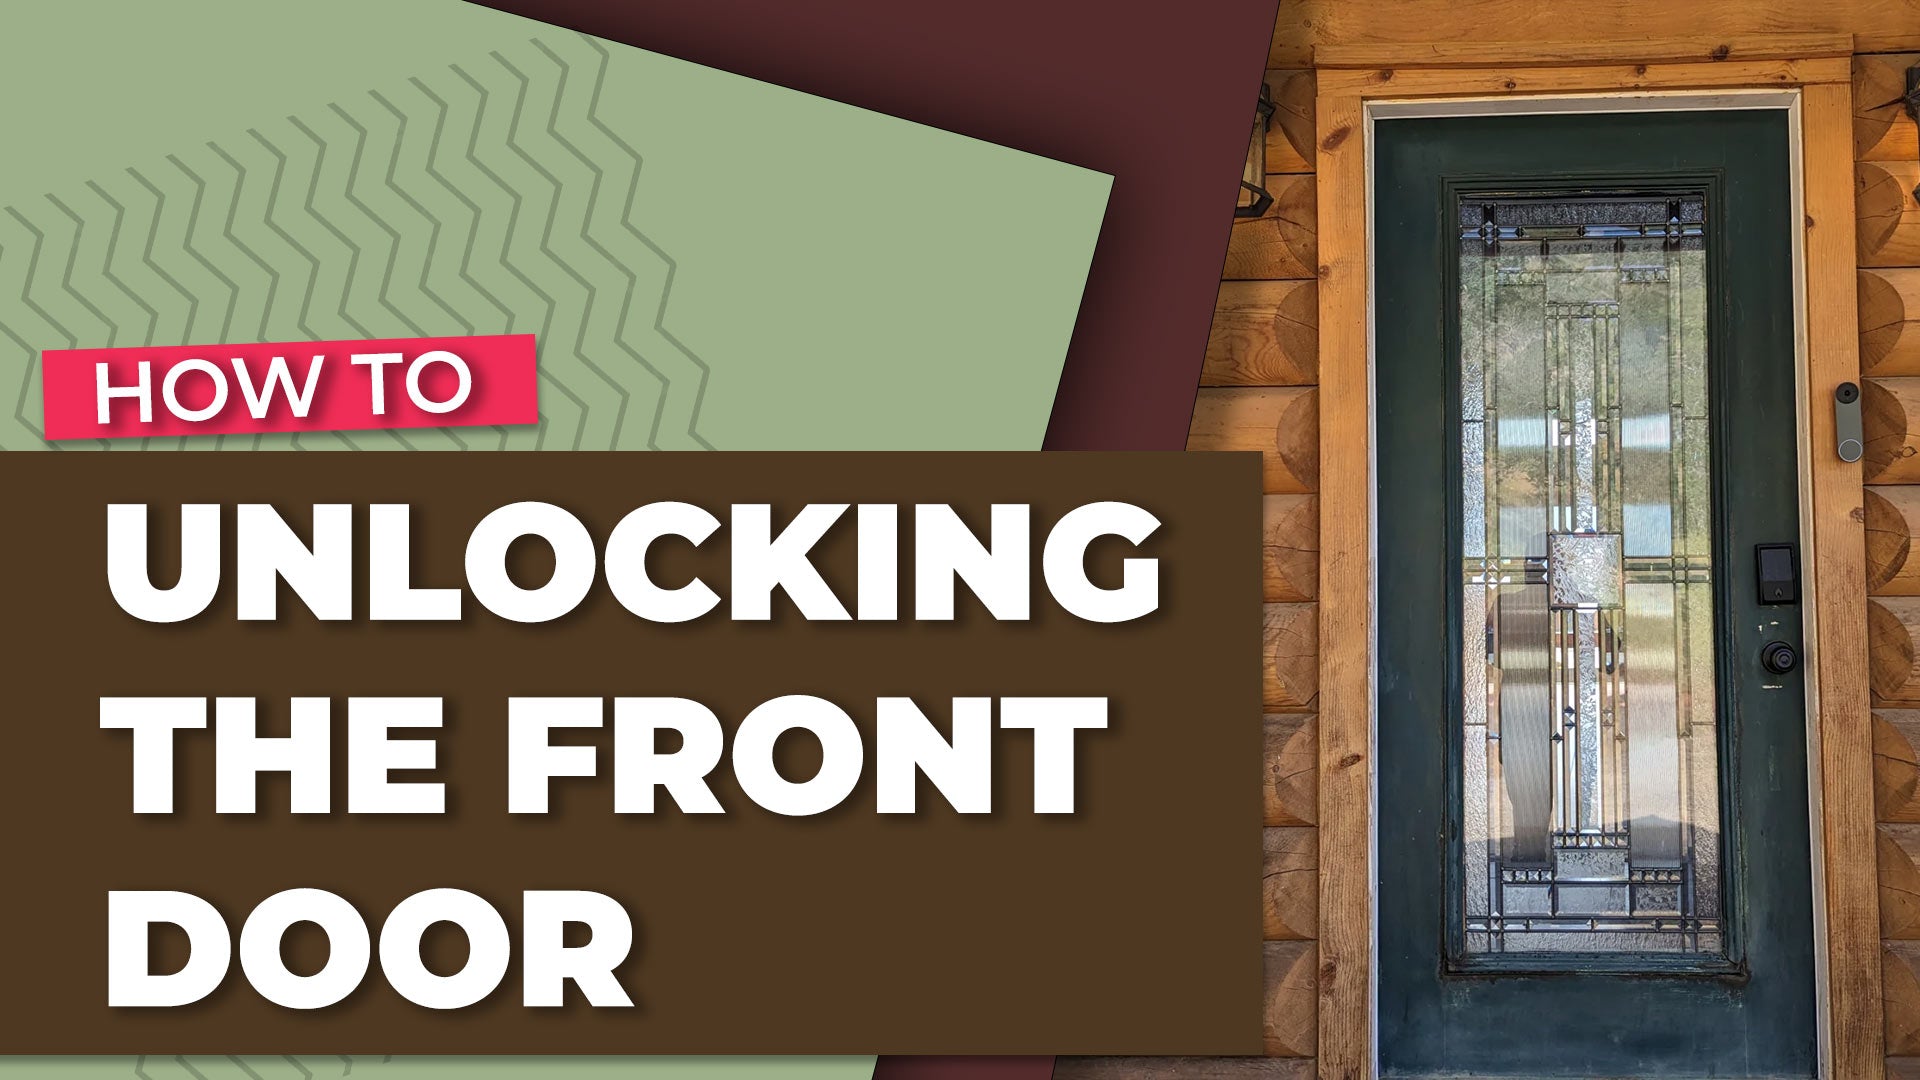 Unlocking the front door